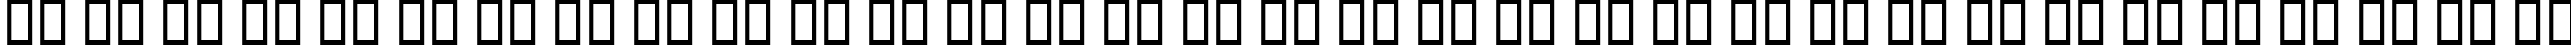 Пример написания русского алфавита шрифтом Edwardian Scr Alt ITC TT